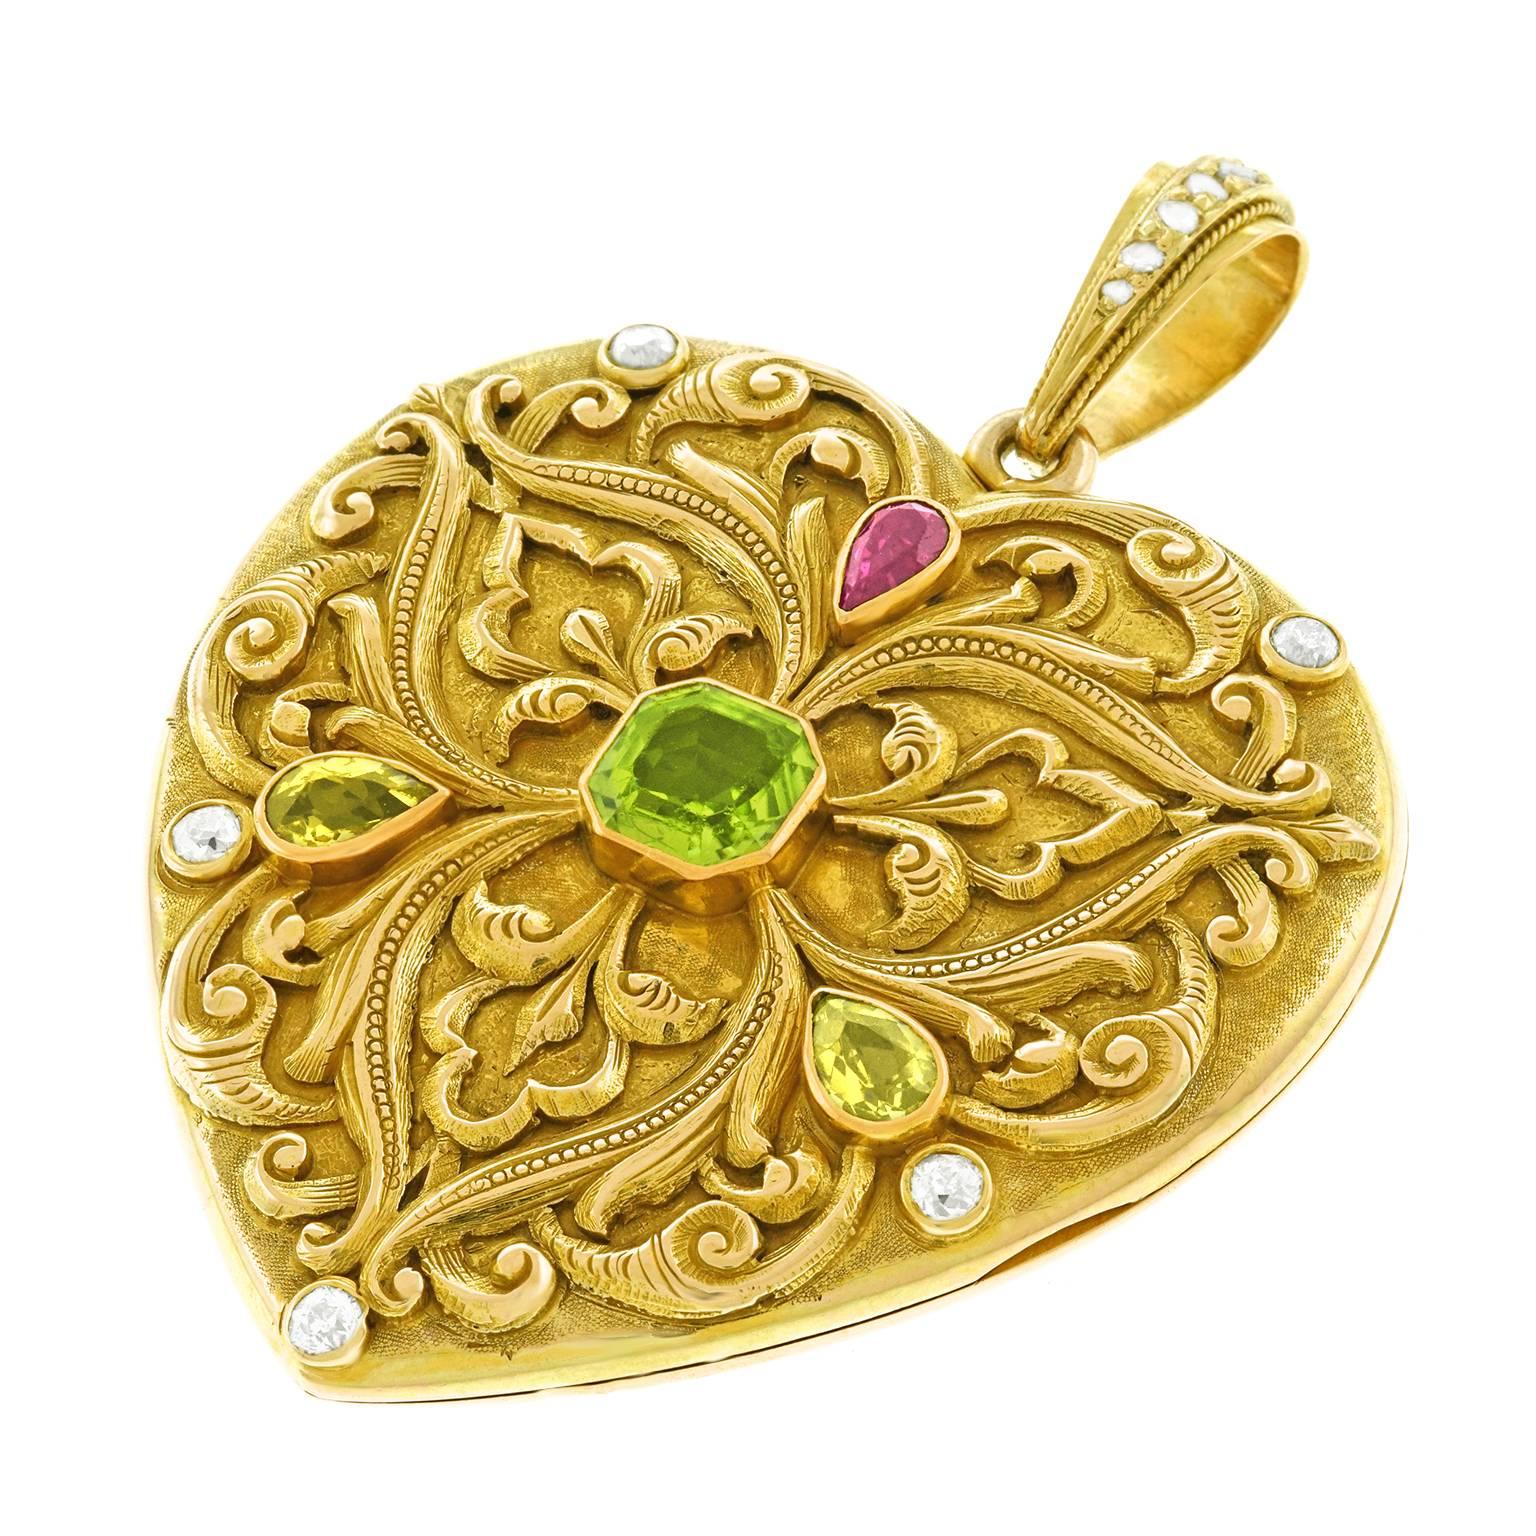 Victorian Spectacular Renaissance Revival Gold Heart Locket